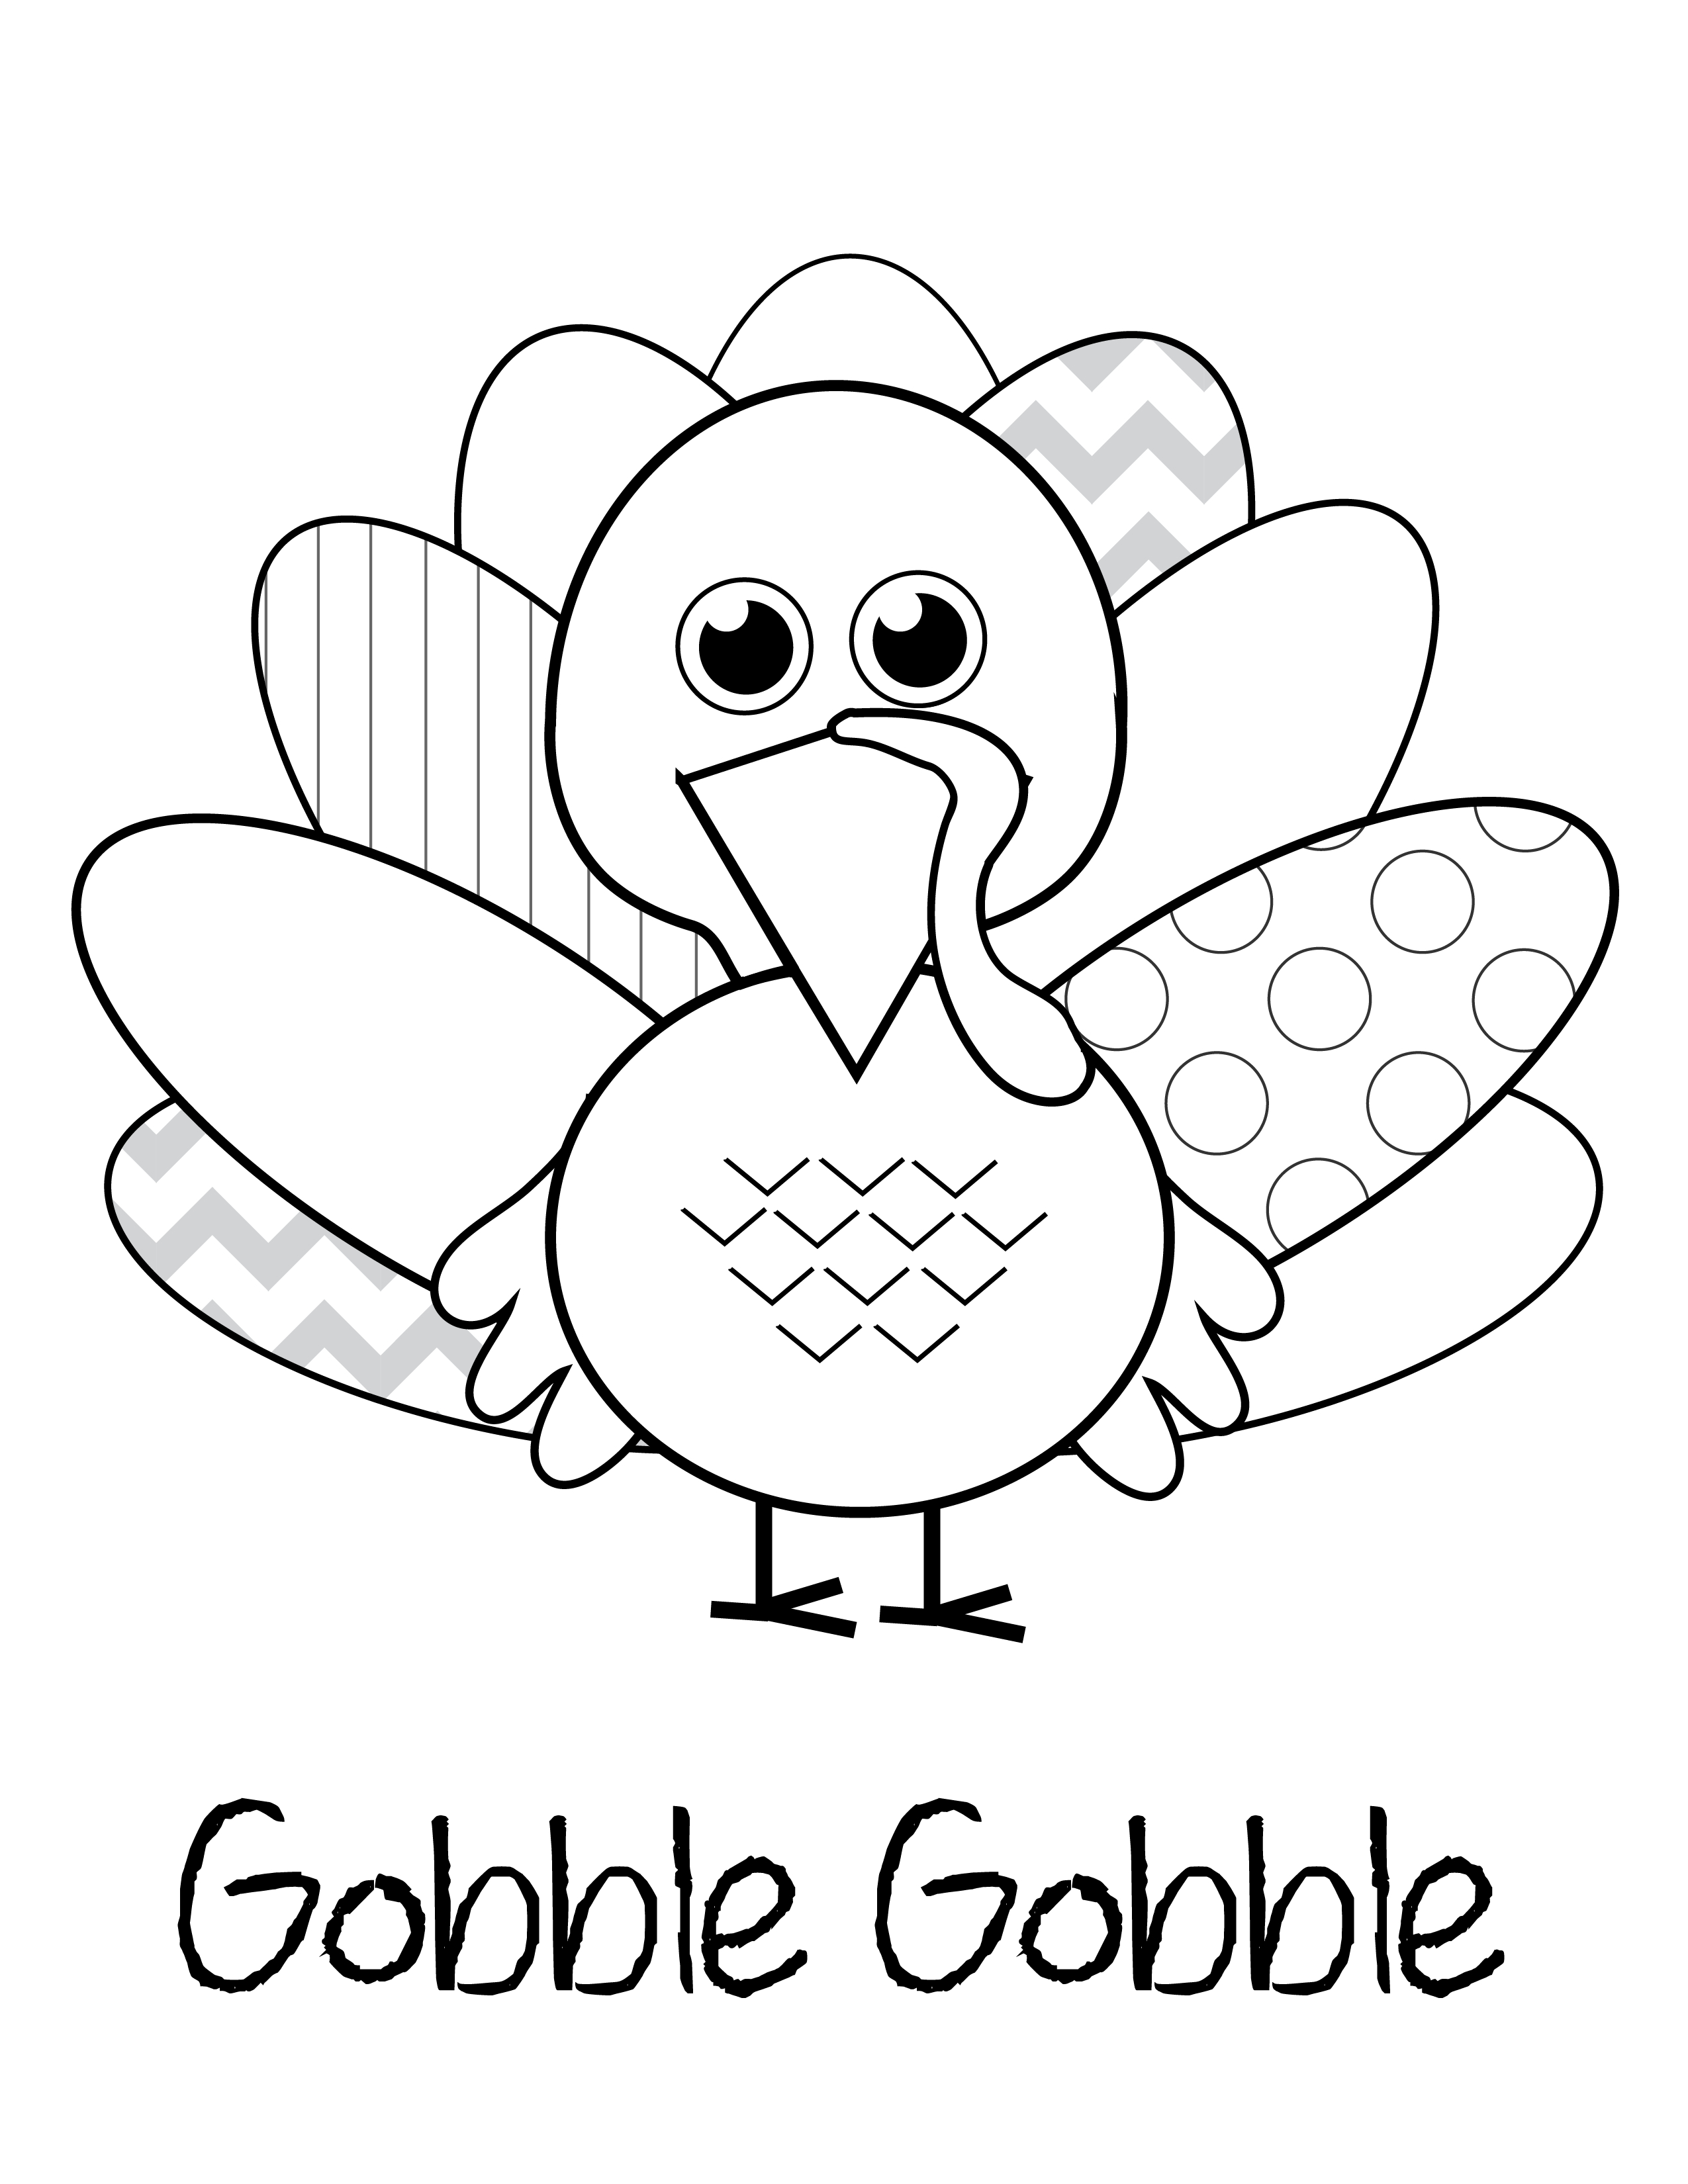 Free Thanksgiving Printables | Kids Thanksgiving Ideas - Free Printable Thanksgiving Coloring Pages